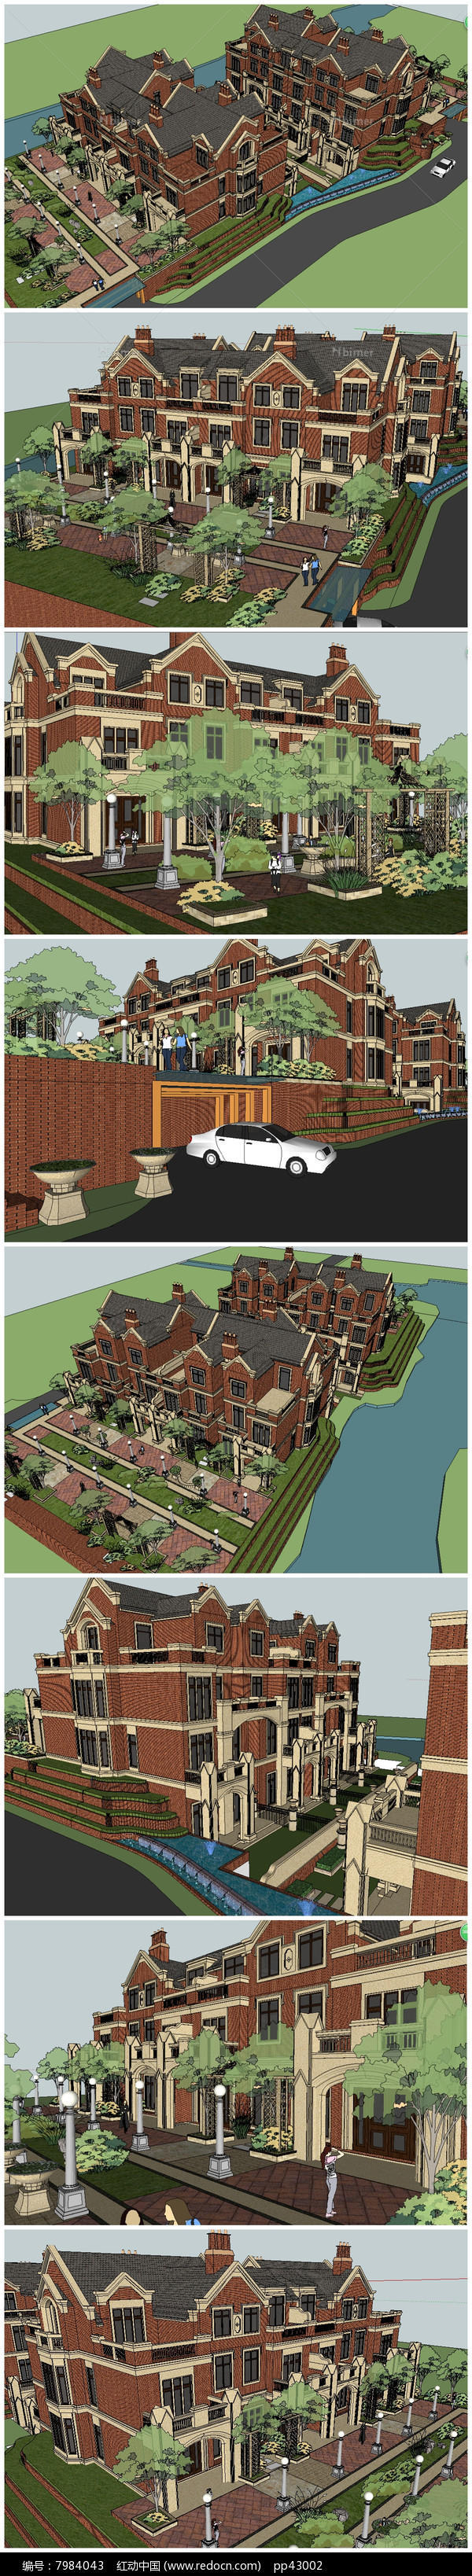 英式别墅小区的两个典型户型SU模型